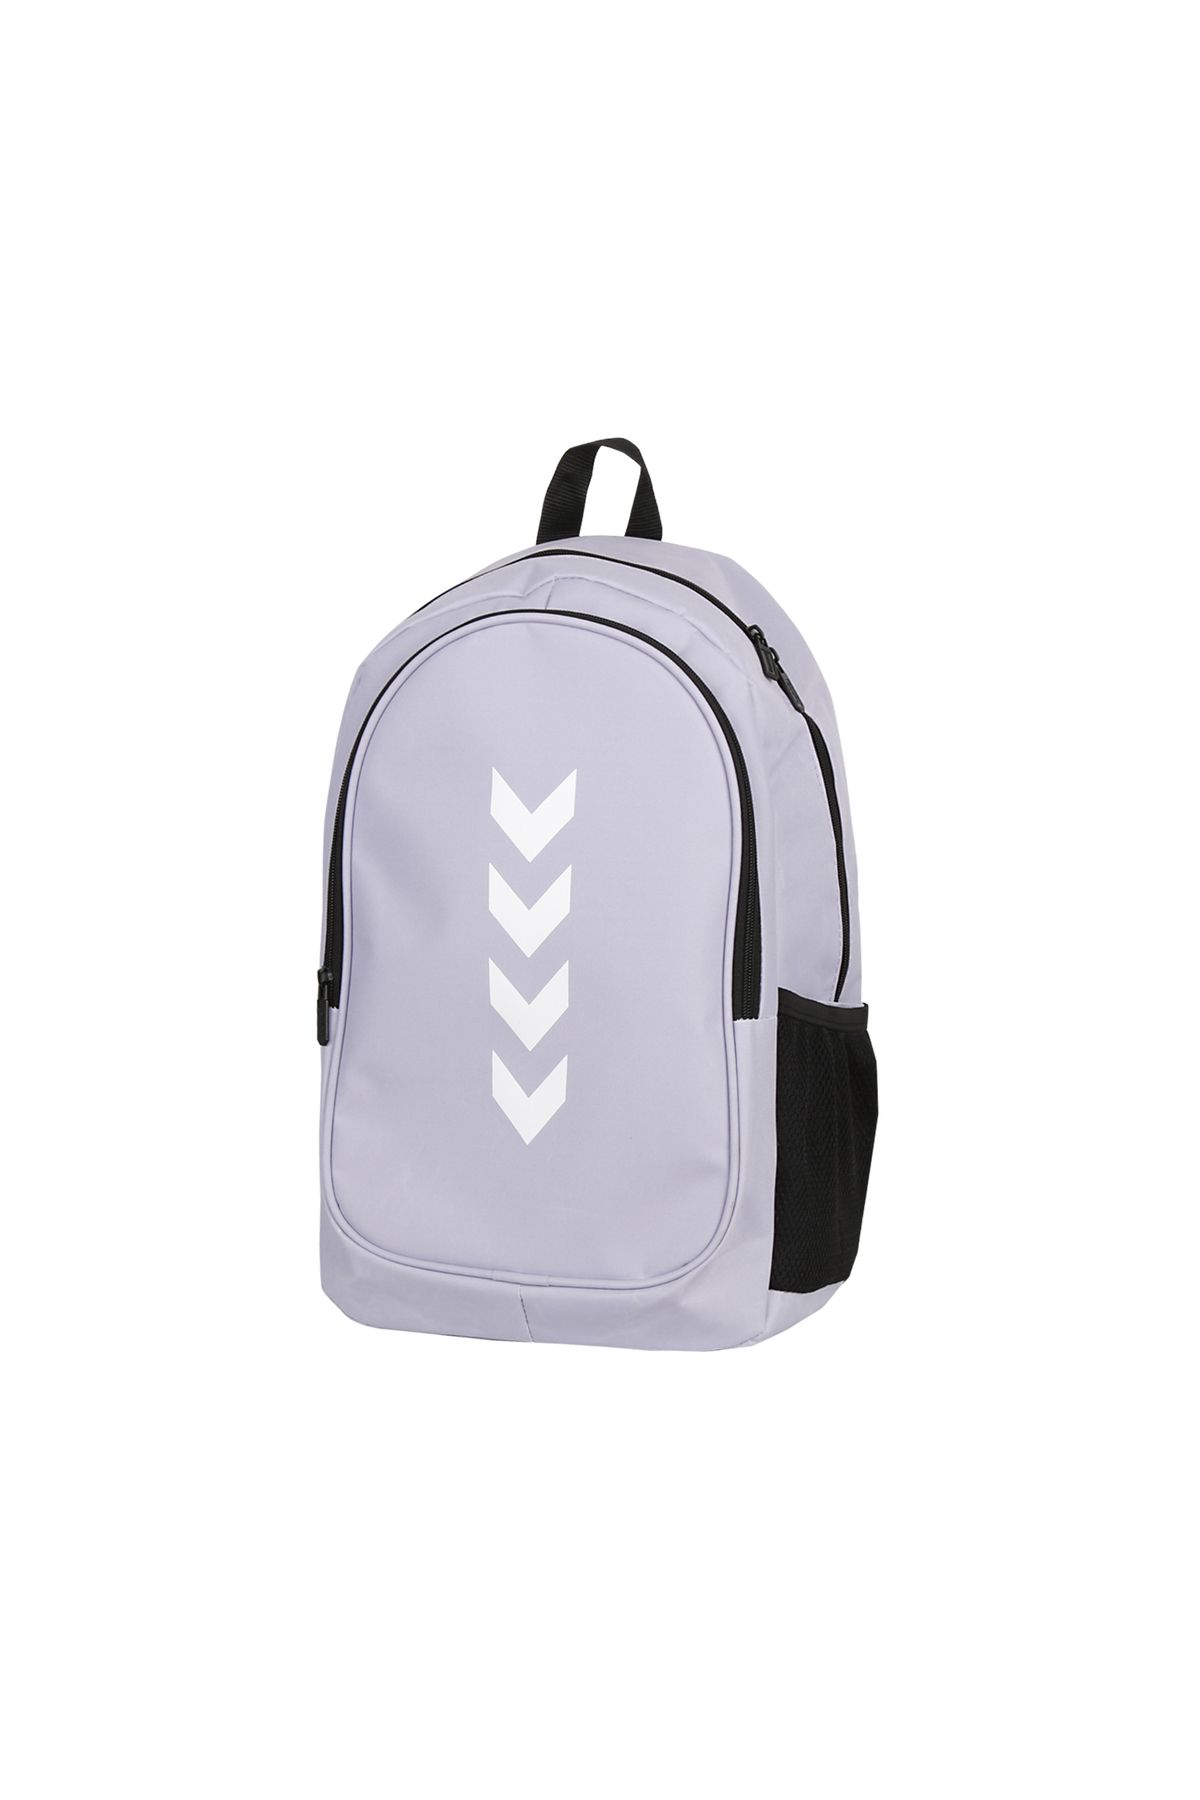 hummel Backpack Günlük Kullanıma Uygun Sırt ve Okul Çantası İlkokul Ortaokul Lise Çantası